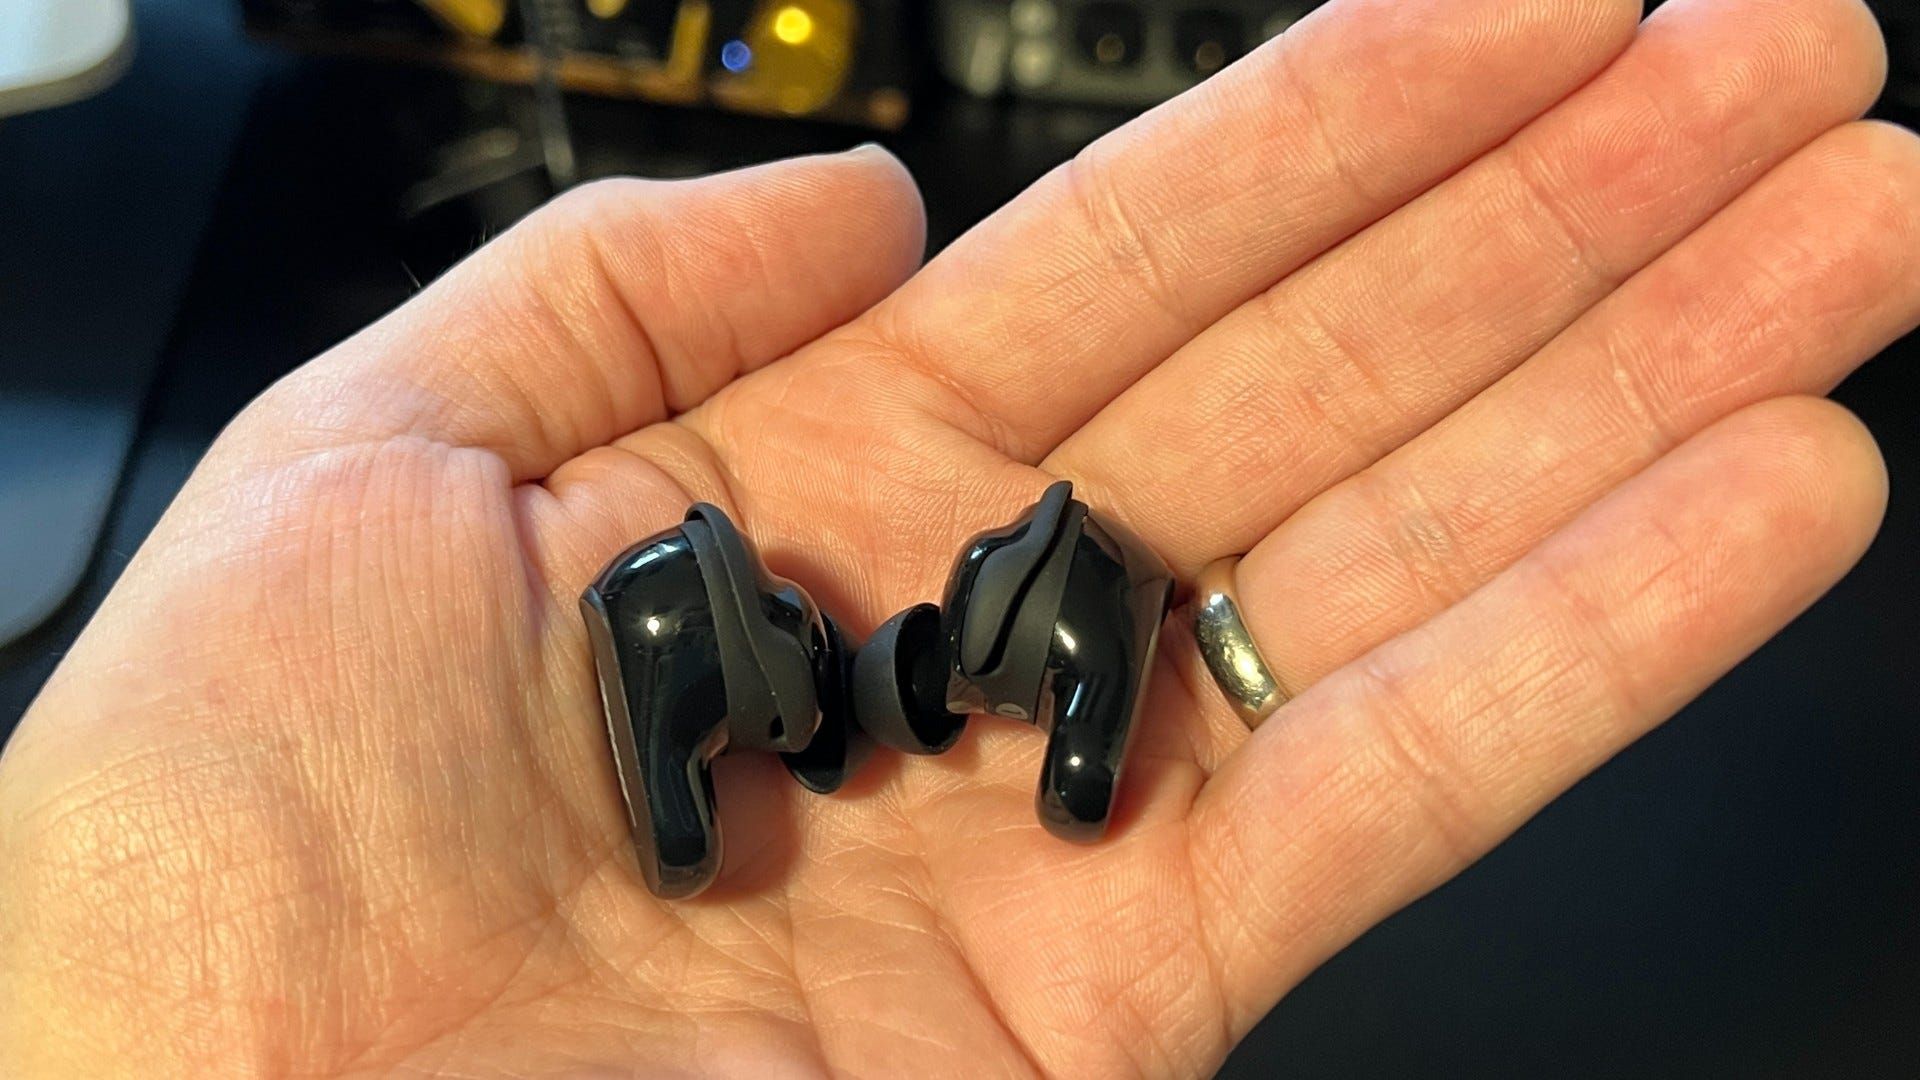 Bose QuietComfort 2 earbuds in hand above black desk